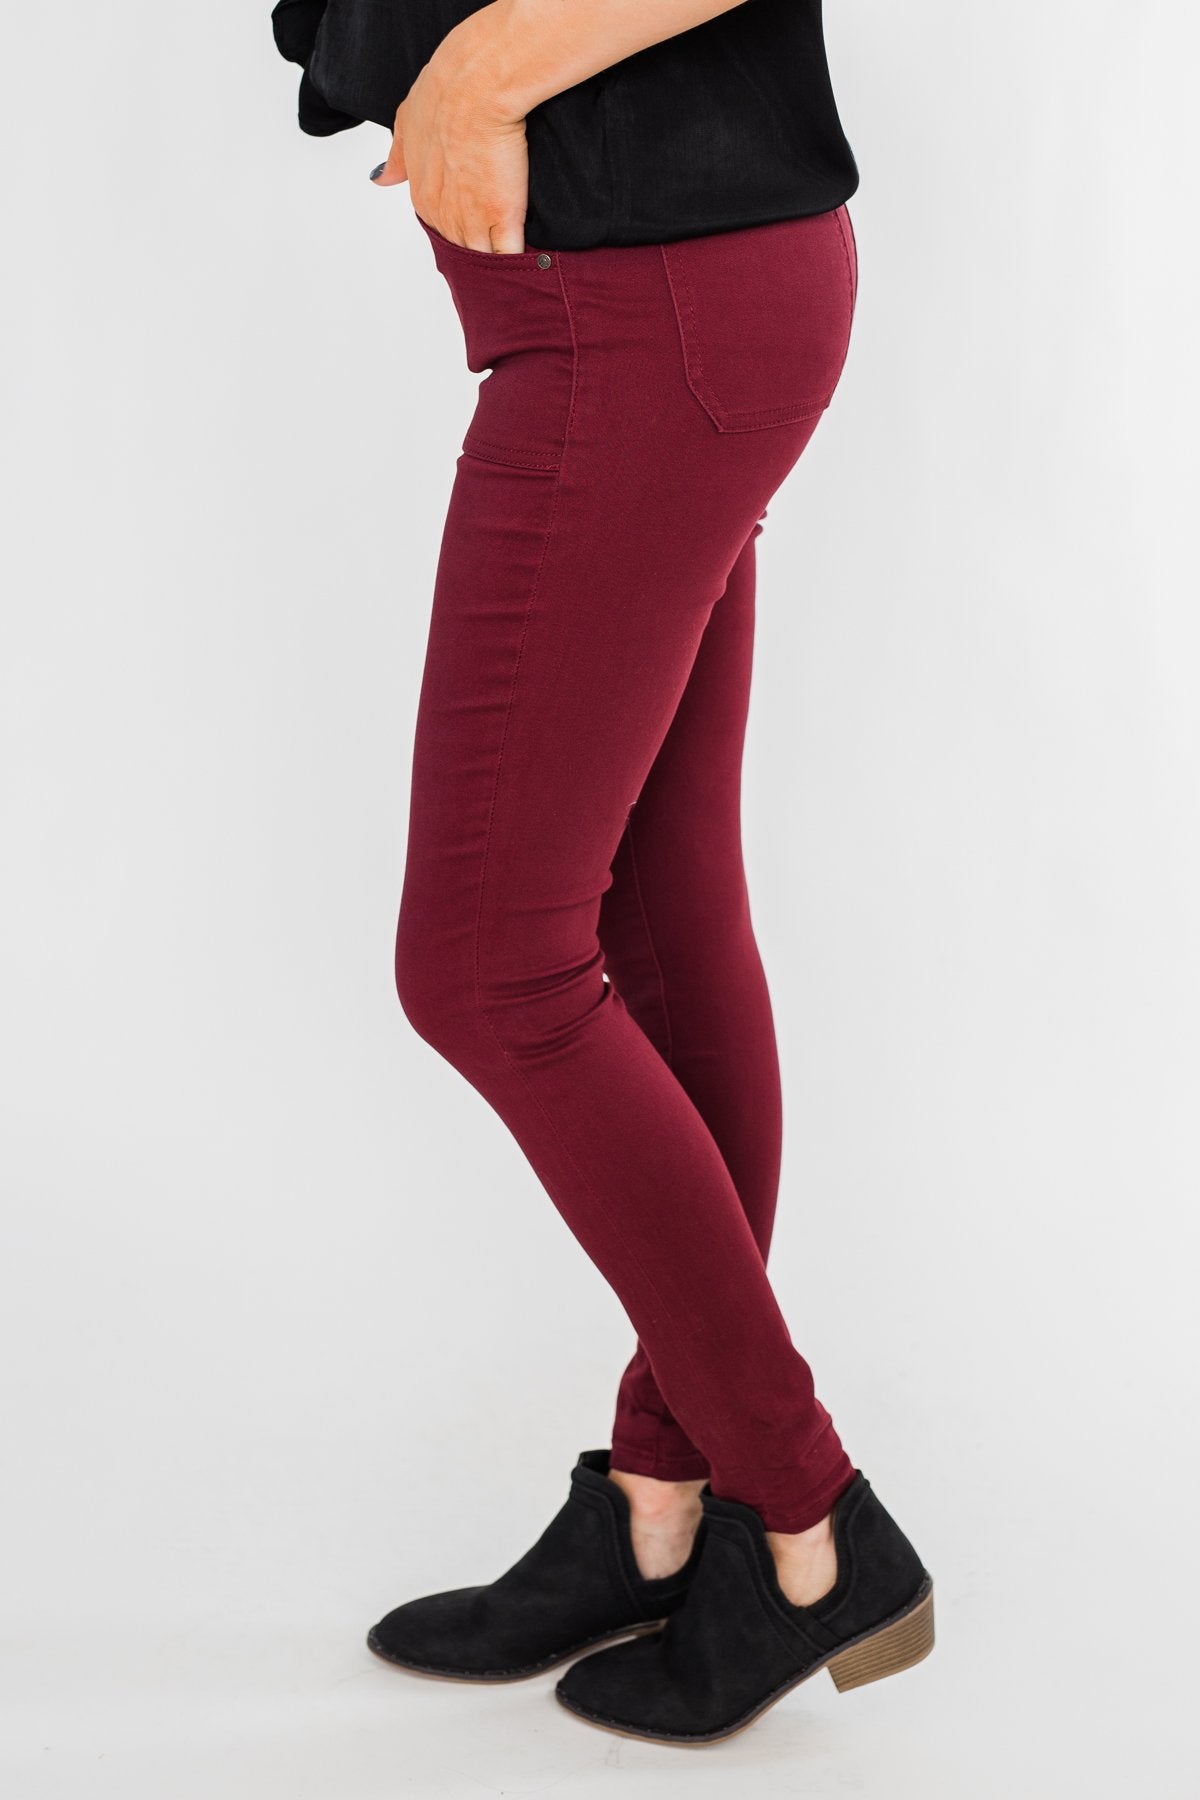 Goneryl evigt værksted Celebrity Pink Ankle Skinny Jeans- Burgundy – The Pulse Boutique